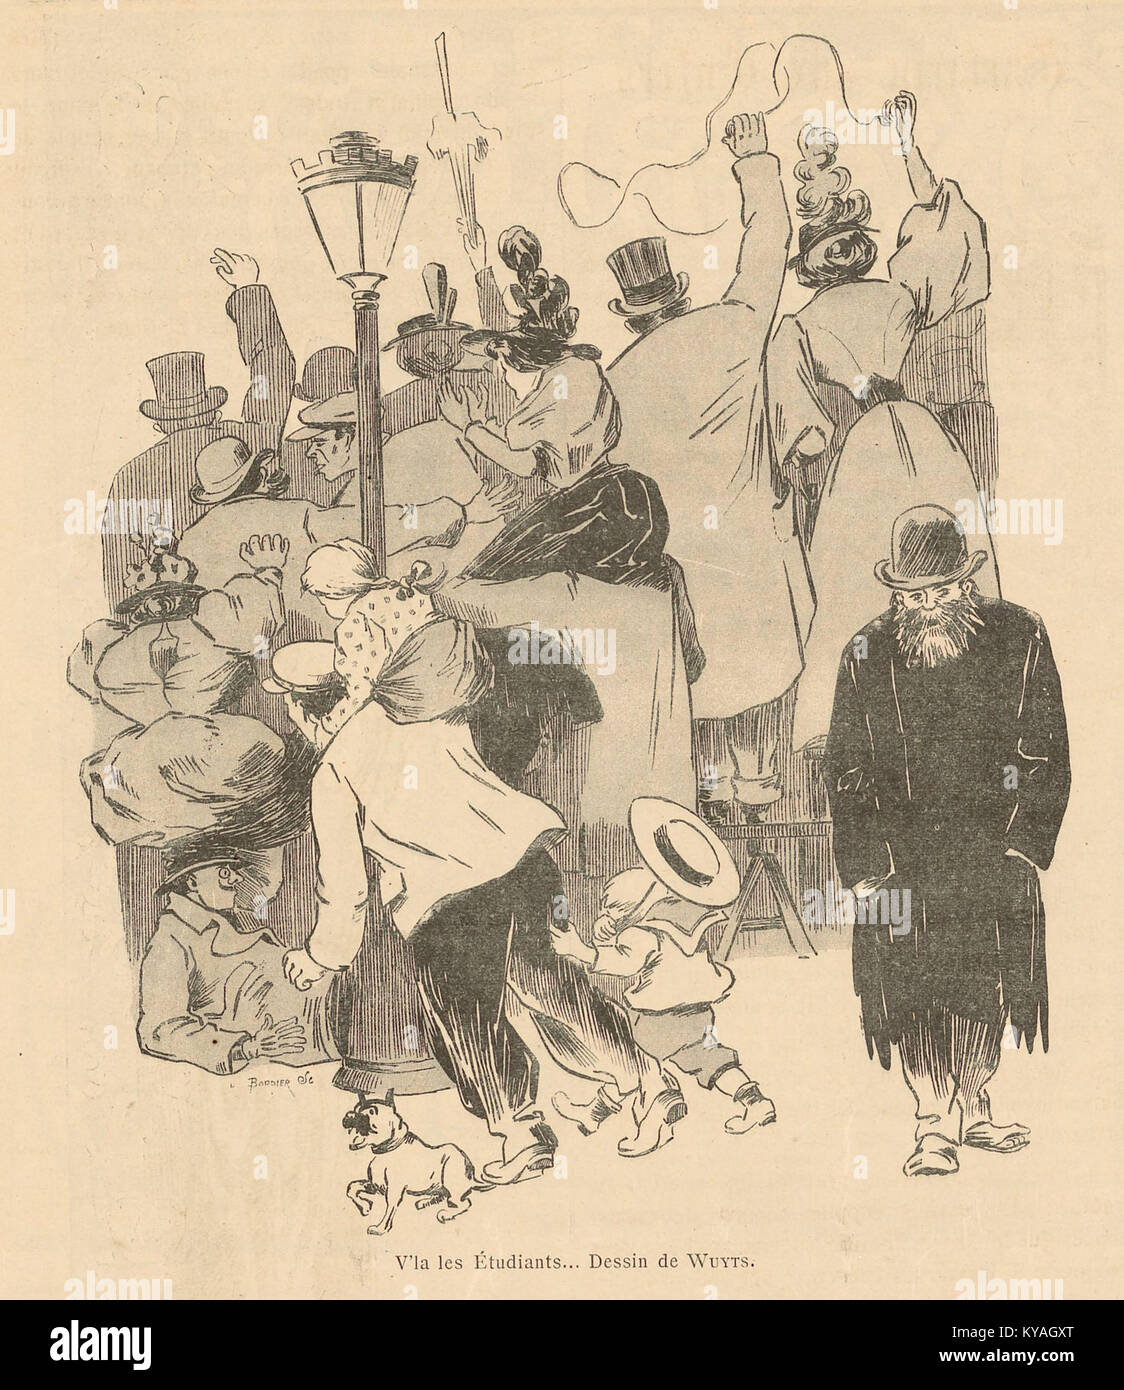 V'là les Etudiants - Dessin de Wuyts - Au Quartier latin, organe de la cavalcade des étudiants - Paris 1897 Stock Photo